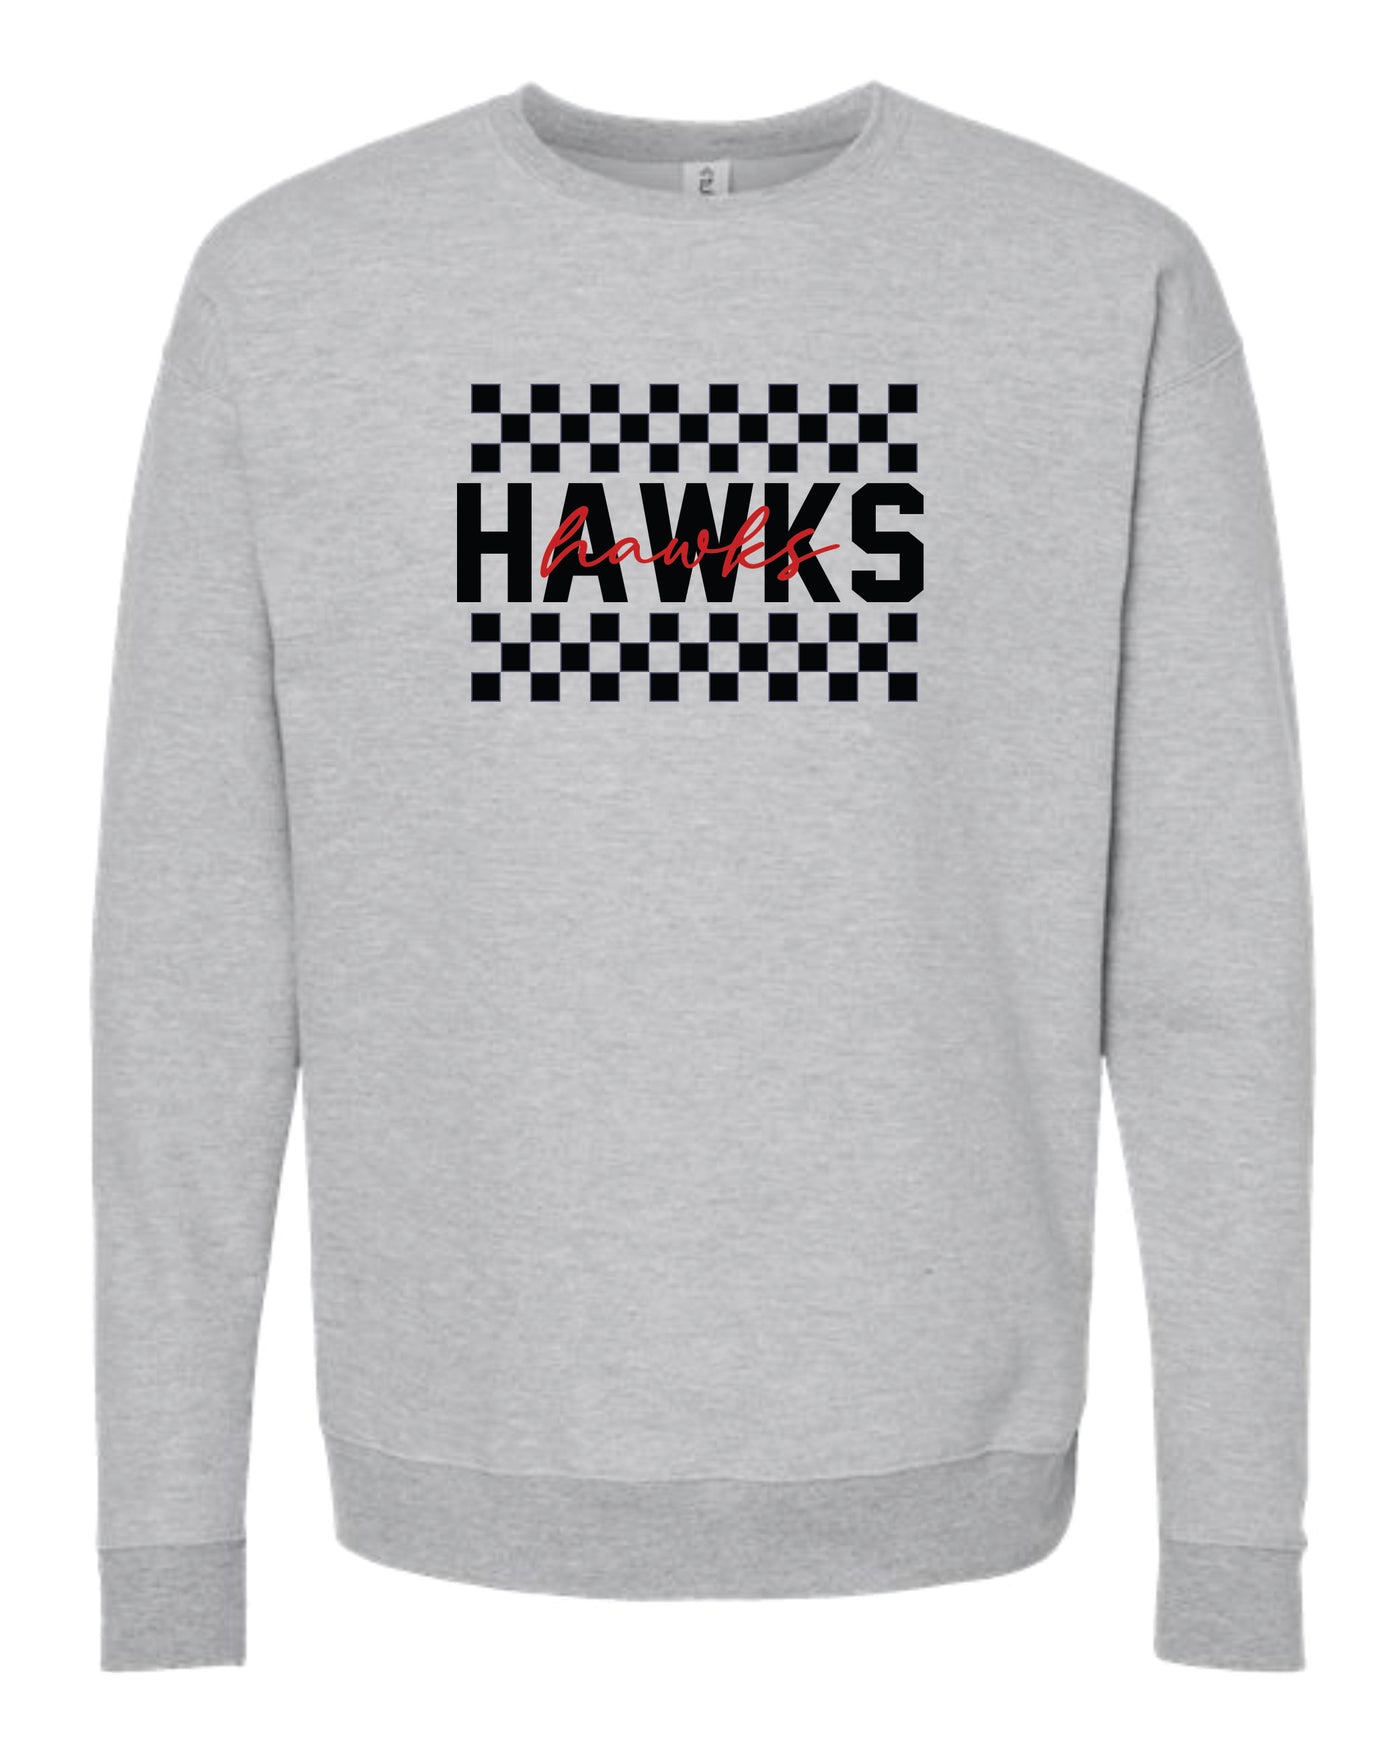 Checkered School Spirit Crewneck Sweatshirt